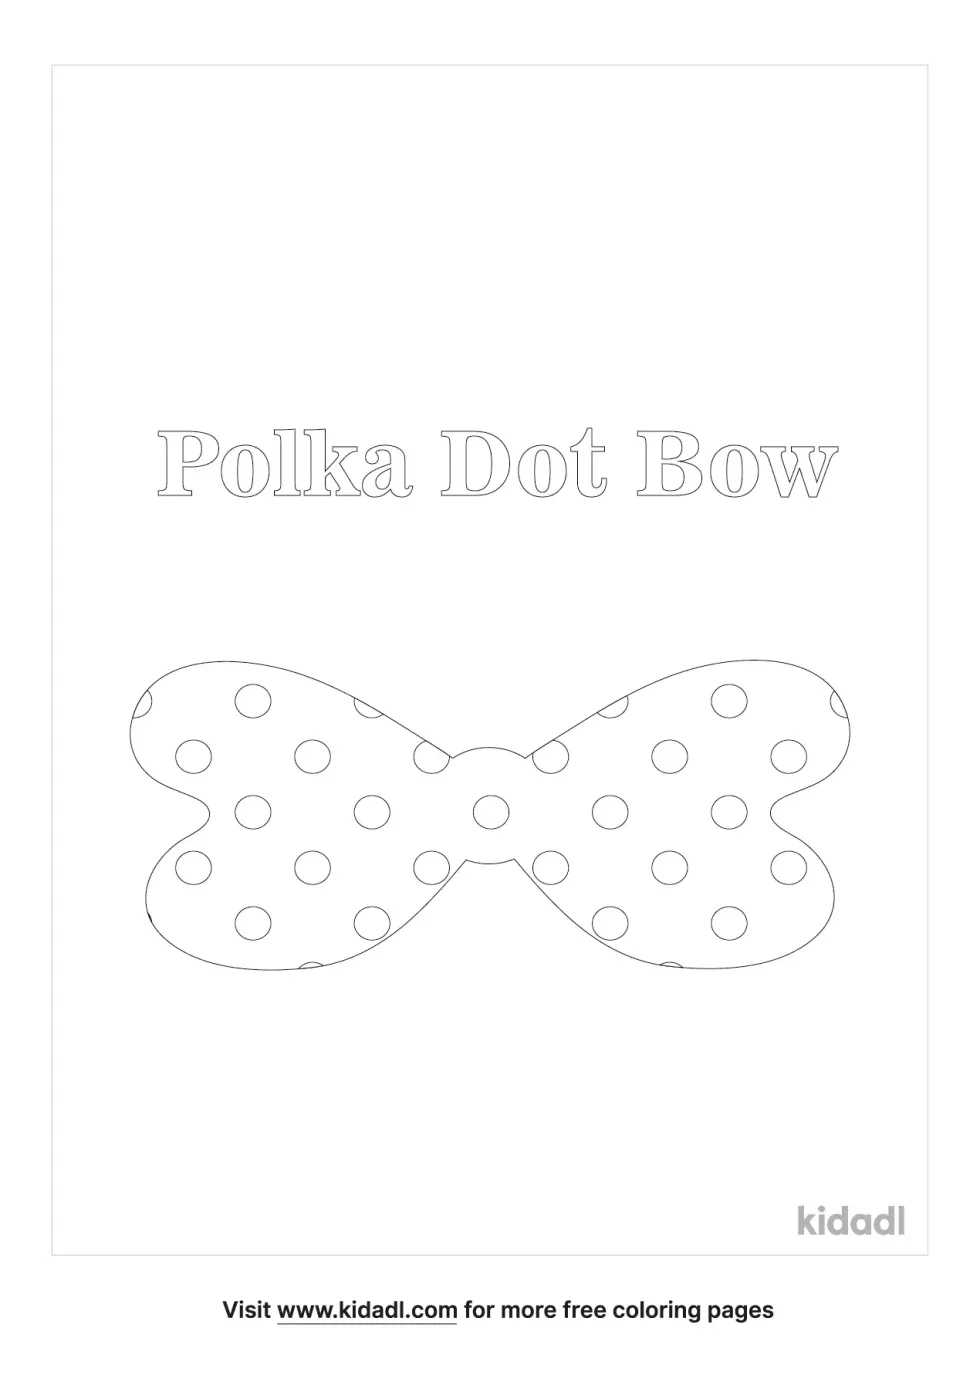 Polka Dot Bow